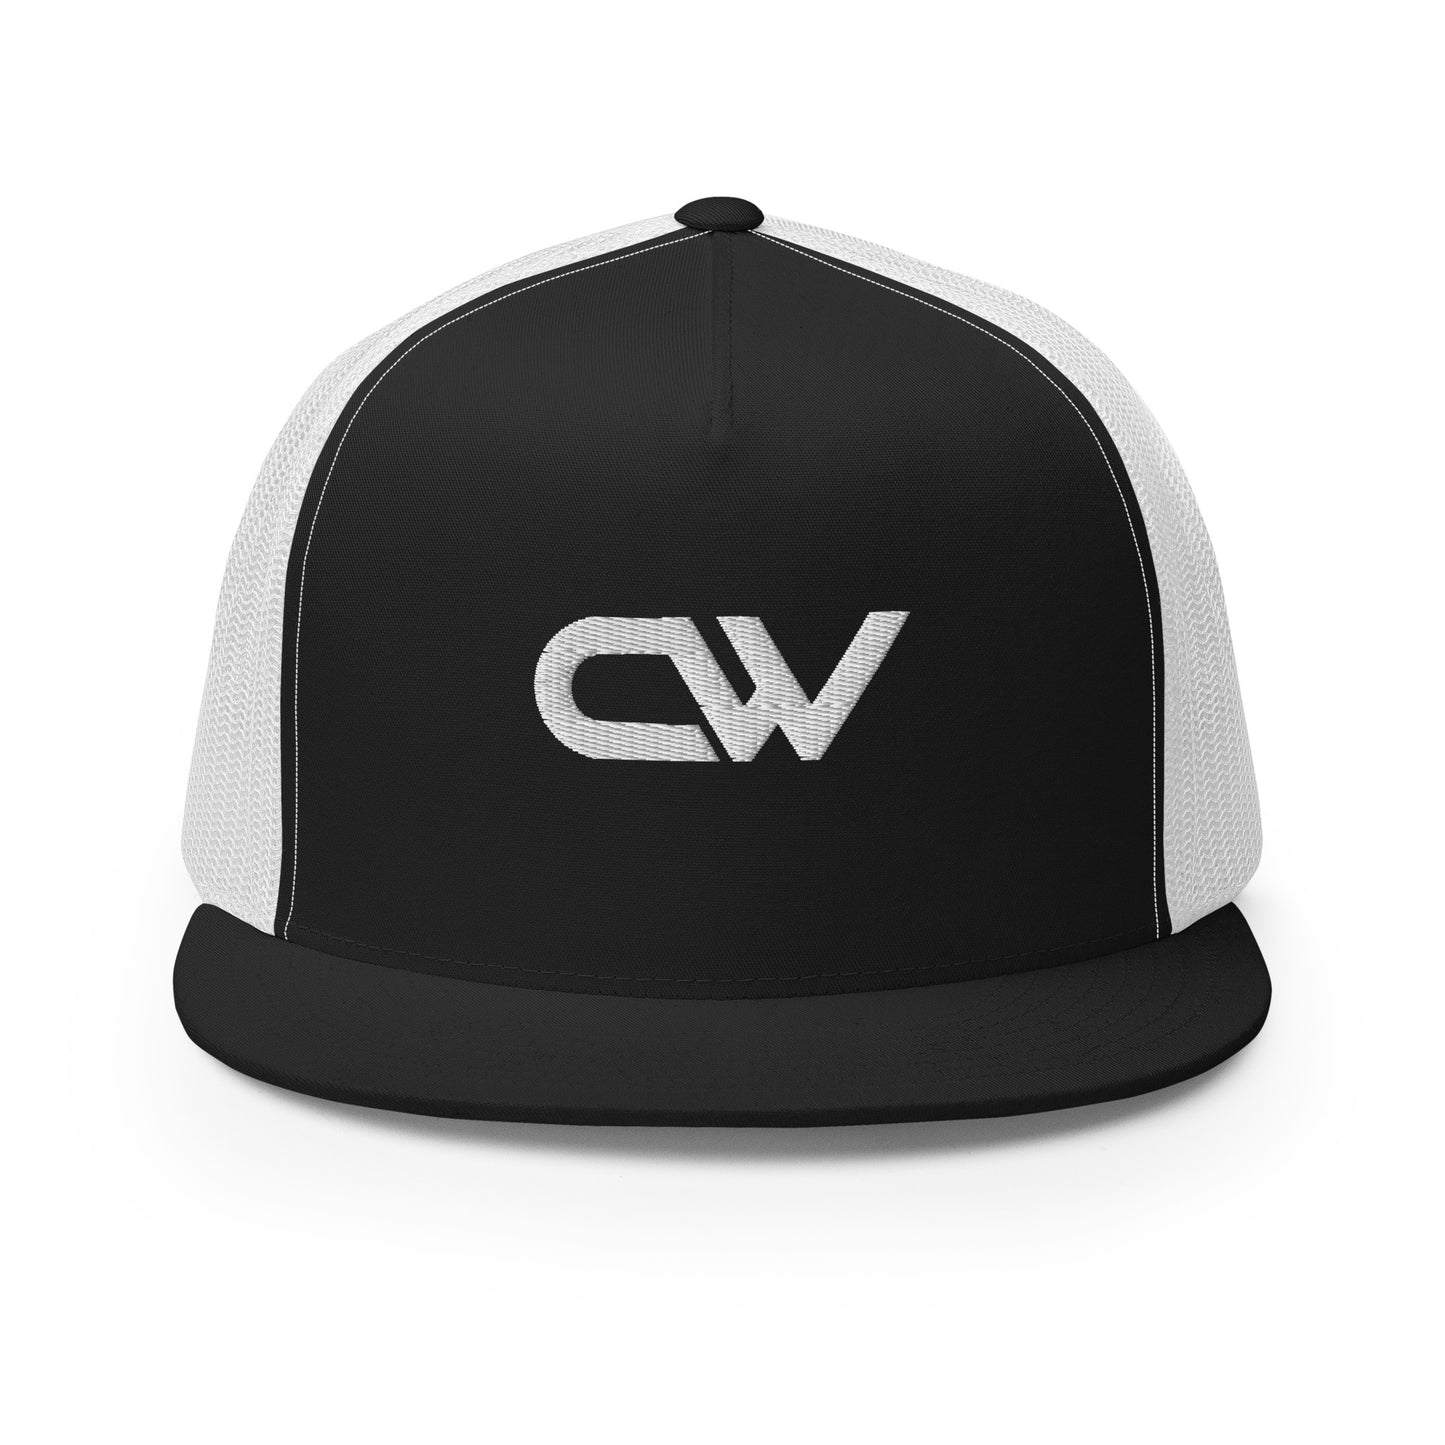 Carson Walls "CW" Trucker Cap